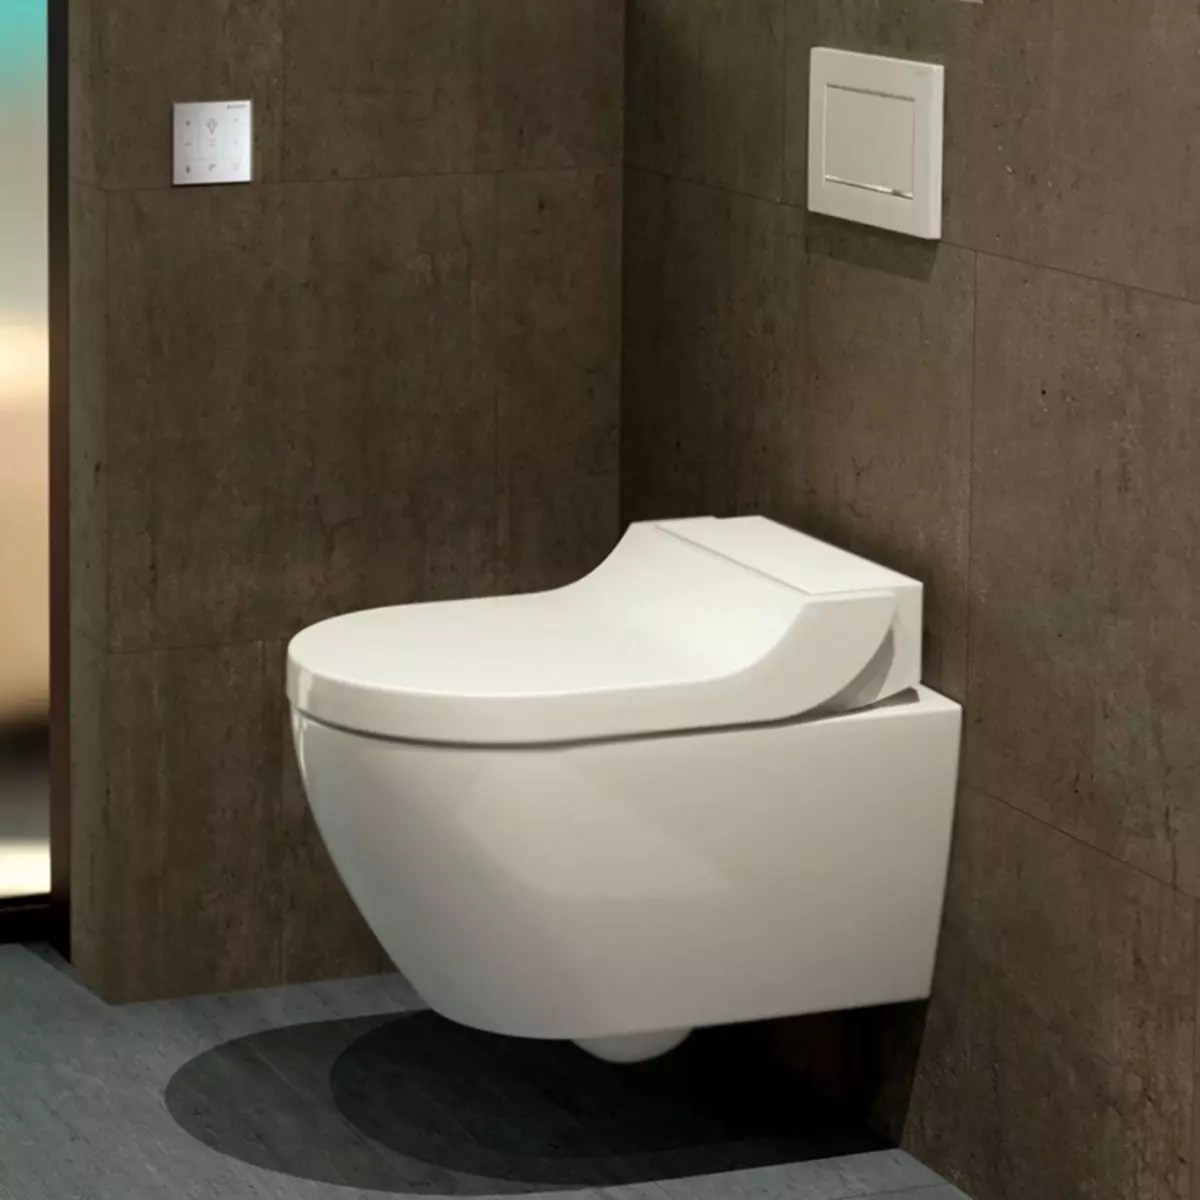 Servizi igienici con una funzione bidet: toilette a sospensione due in uno con un bidone del water integrato, toilette per pavimenti, combinata con un Bift, recensioni 10554_40